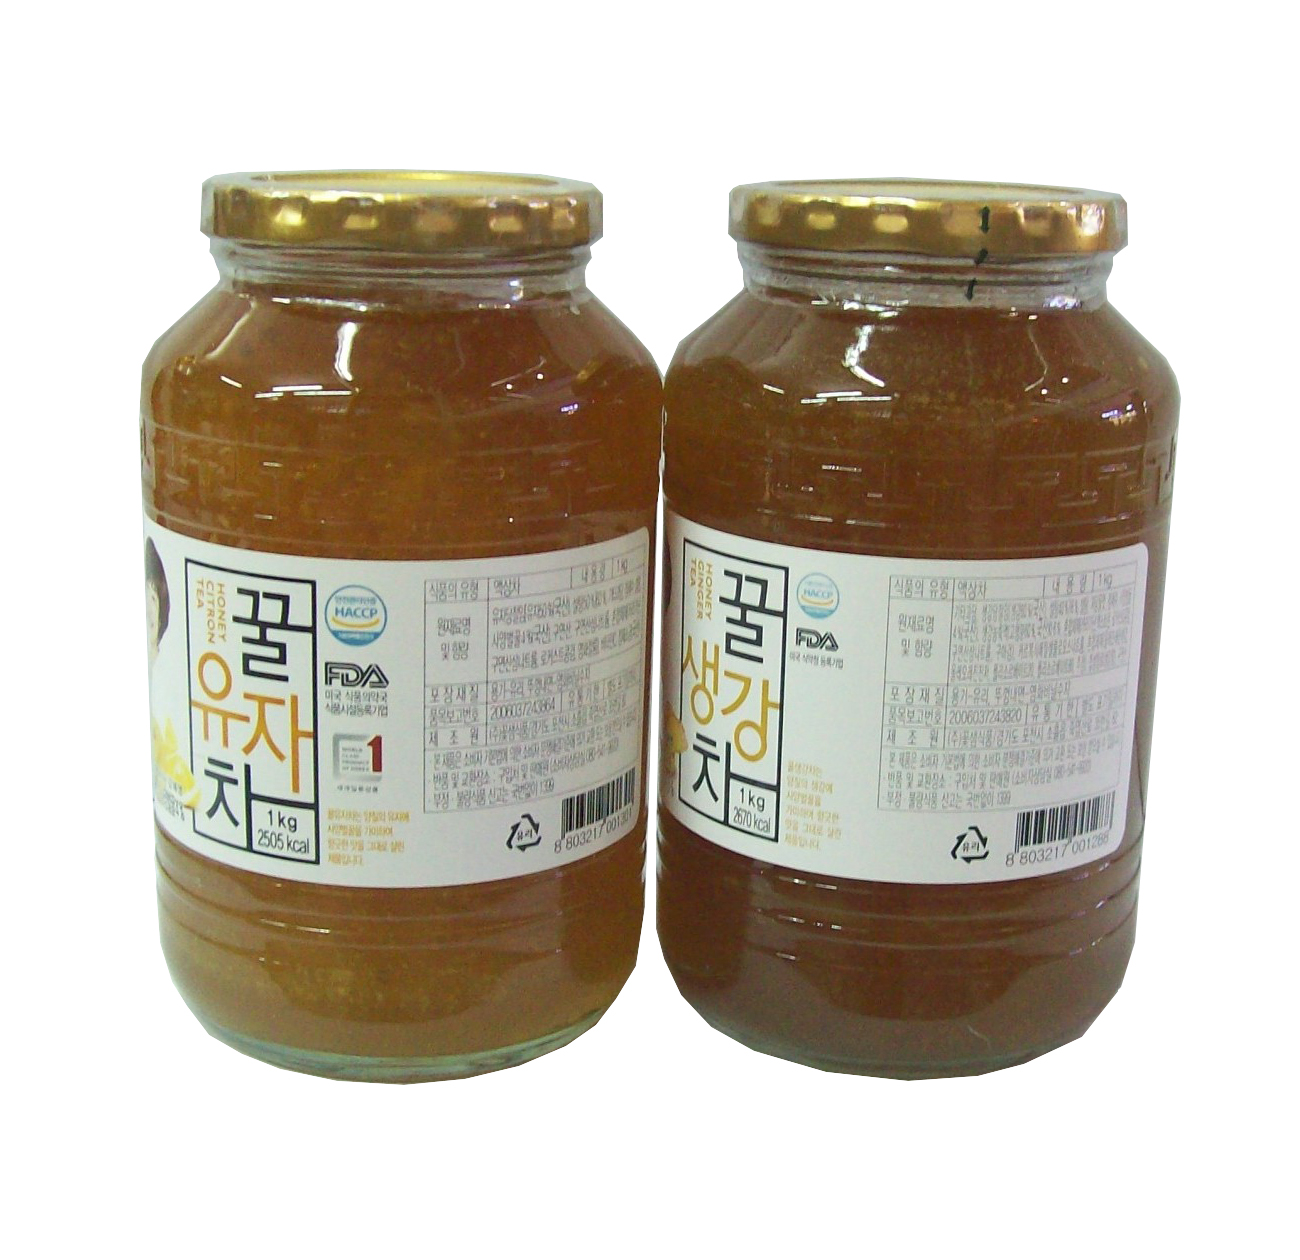 Combo 2 hũ trà thanh yên và trà gừng mật ong Kkoh Shaem Food nhập khẩu Hàn Quốc 1kg